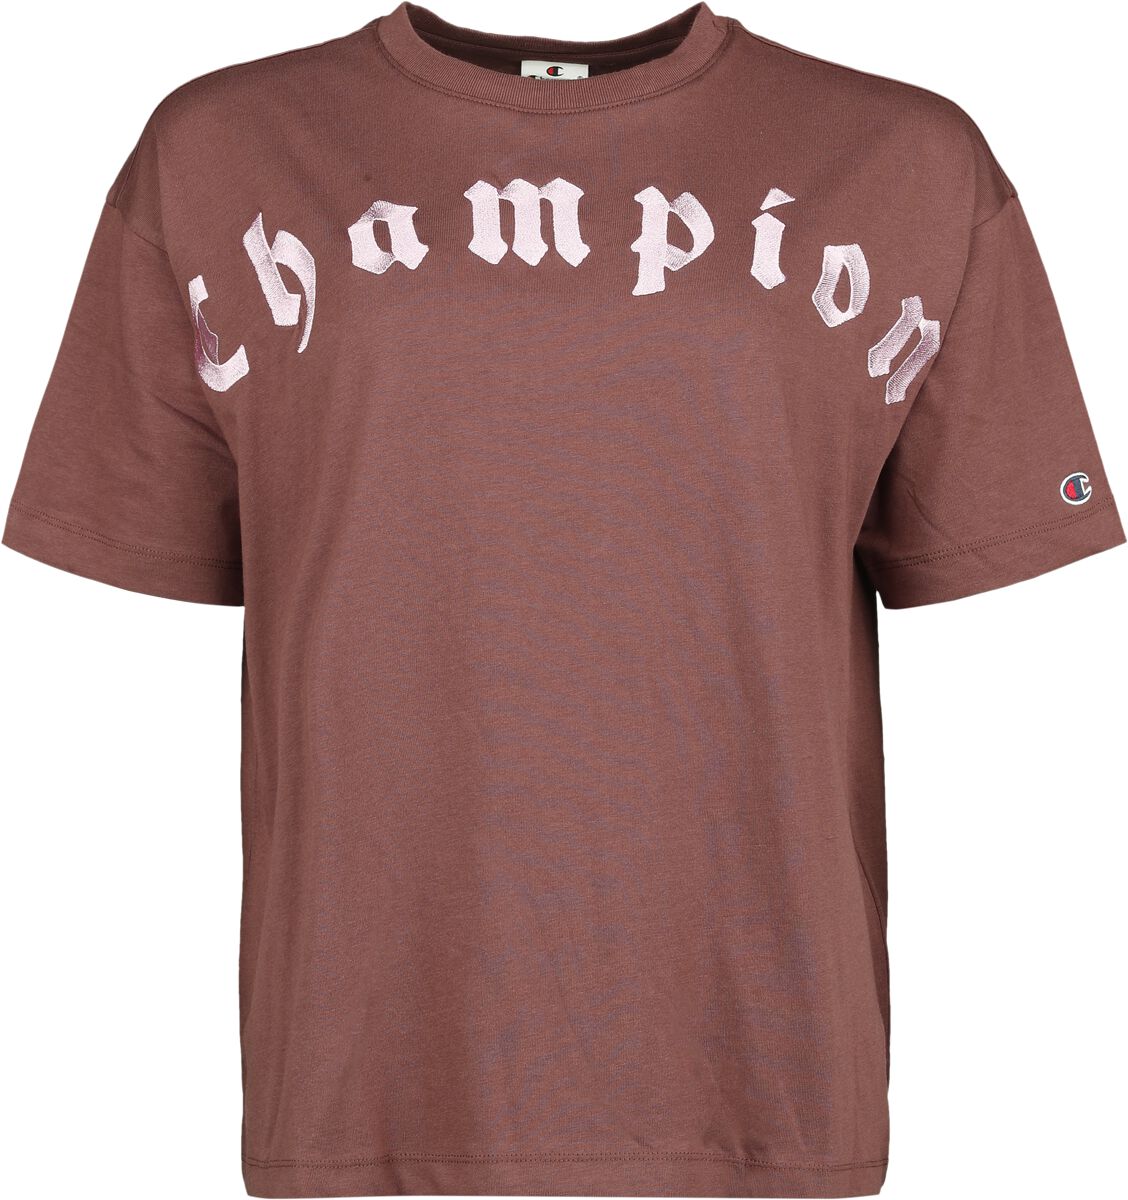 Image of T-Shirt di Champion - Crewneck t-shirt - S a XL - Donna - bordeaux